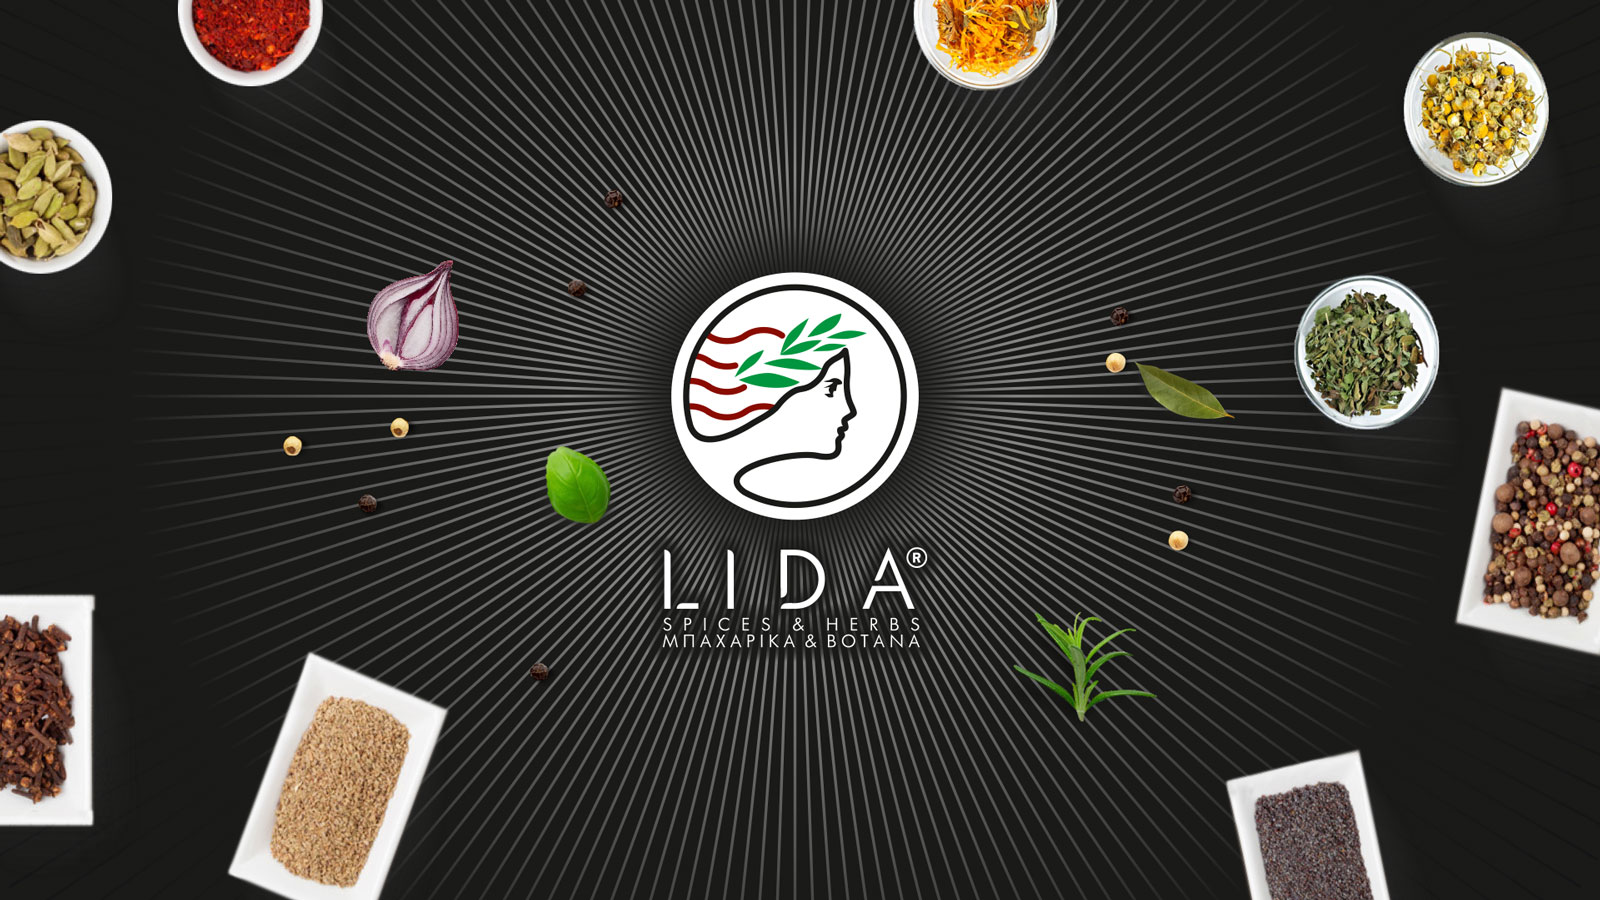 LIDA Spices Herbs Logo